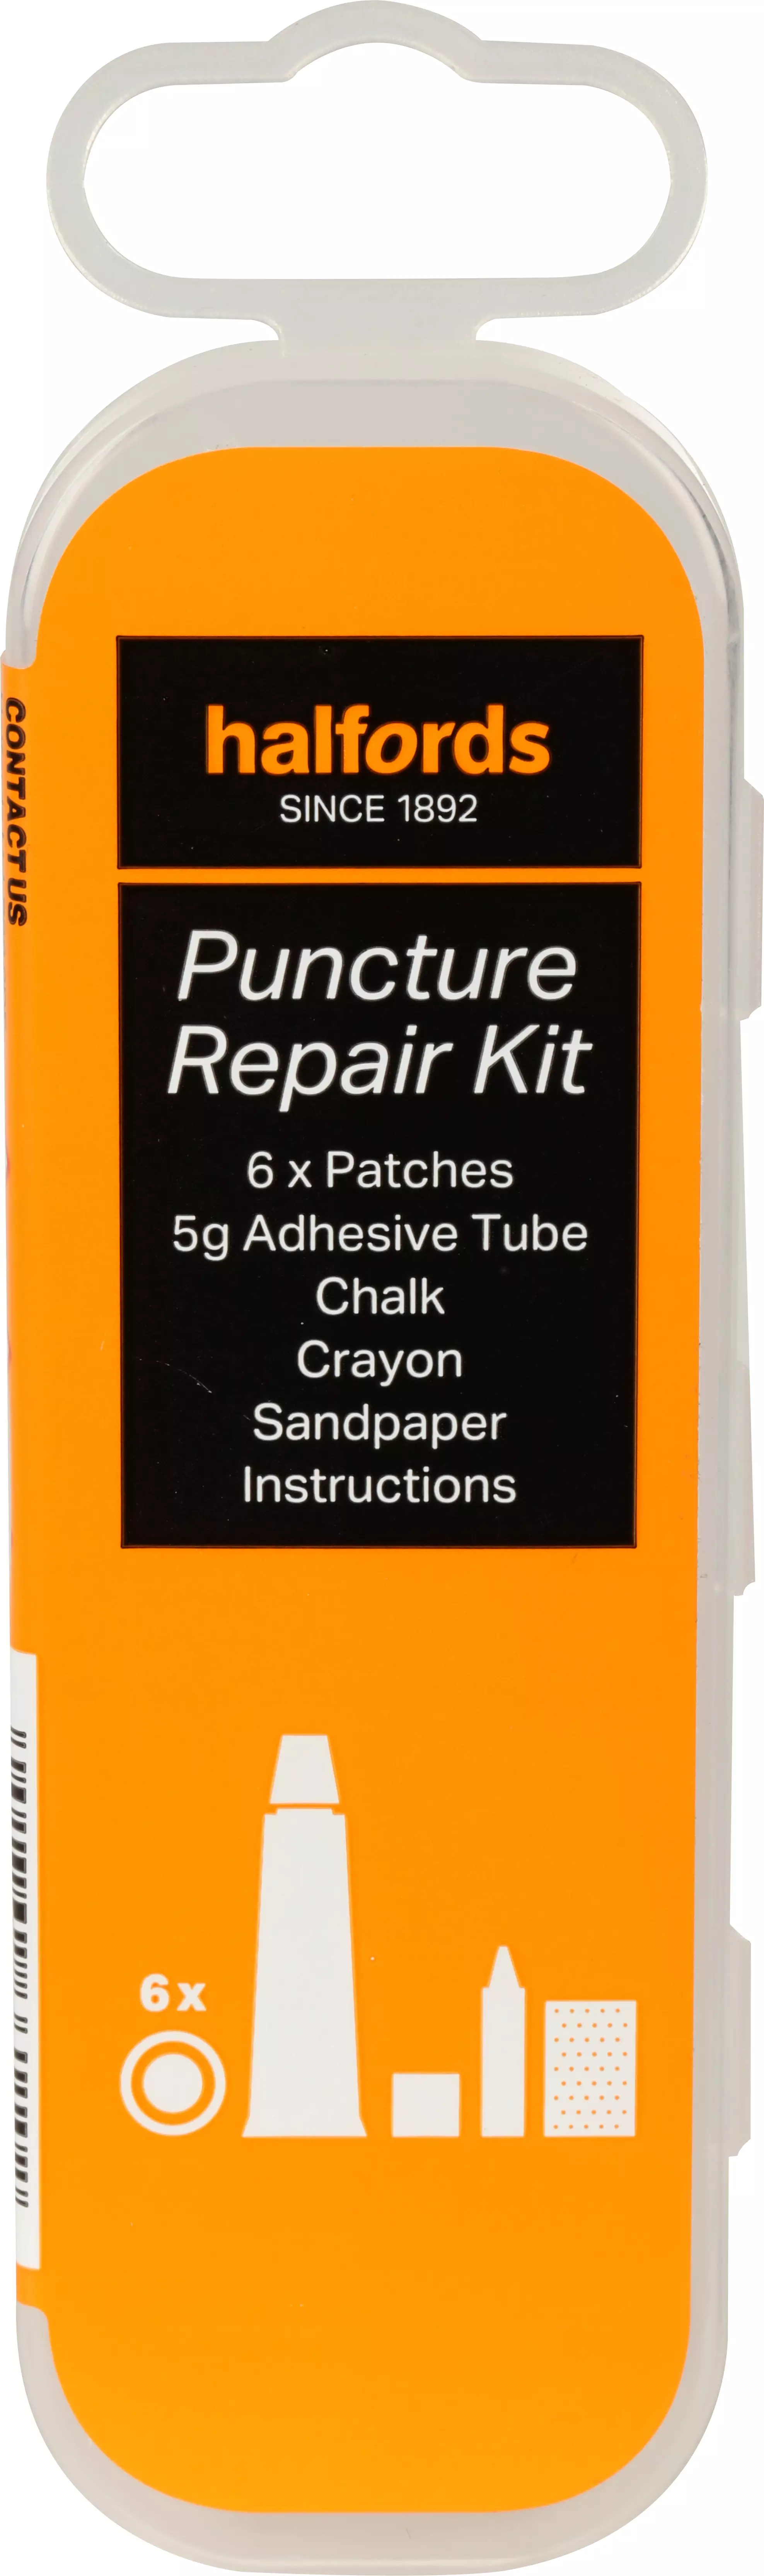 motorcycle puncture repair kit halfords